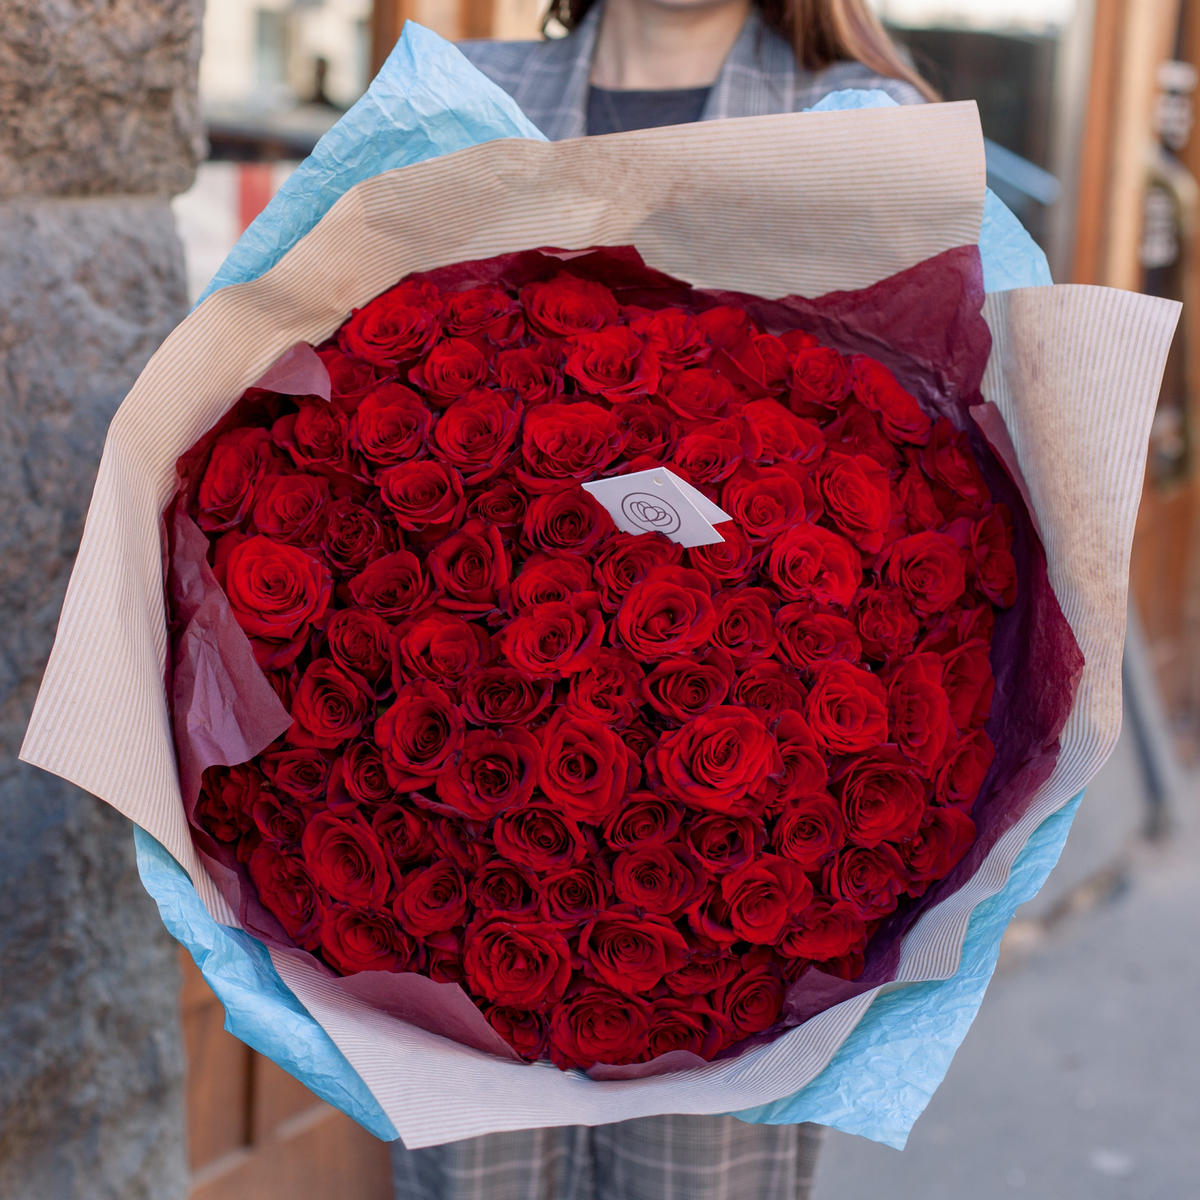 Какие цветы подарить девушке если не знаешь какие она любит. идеи+ фото